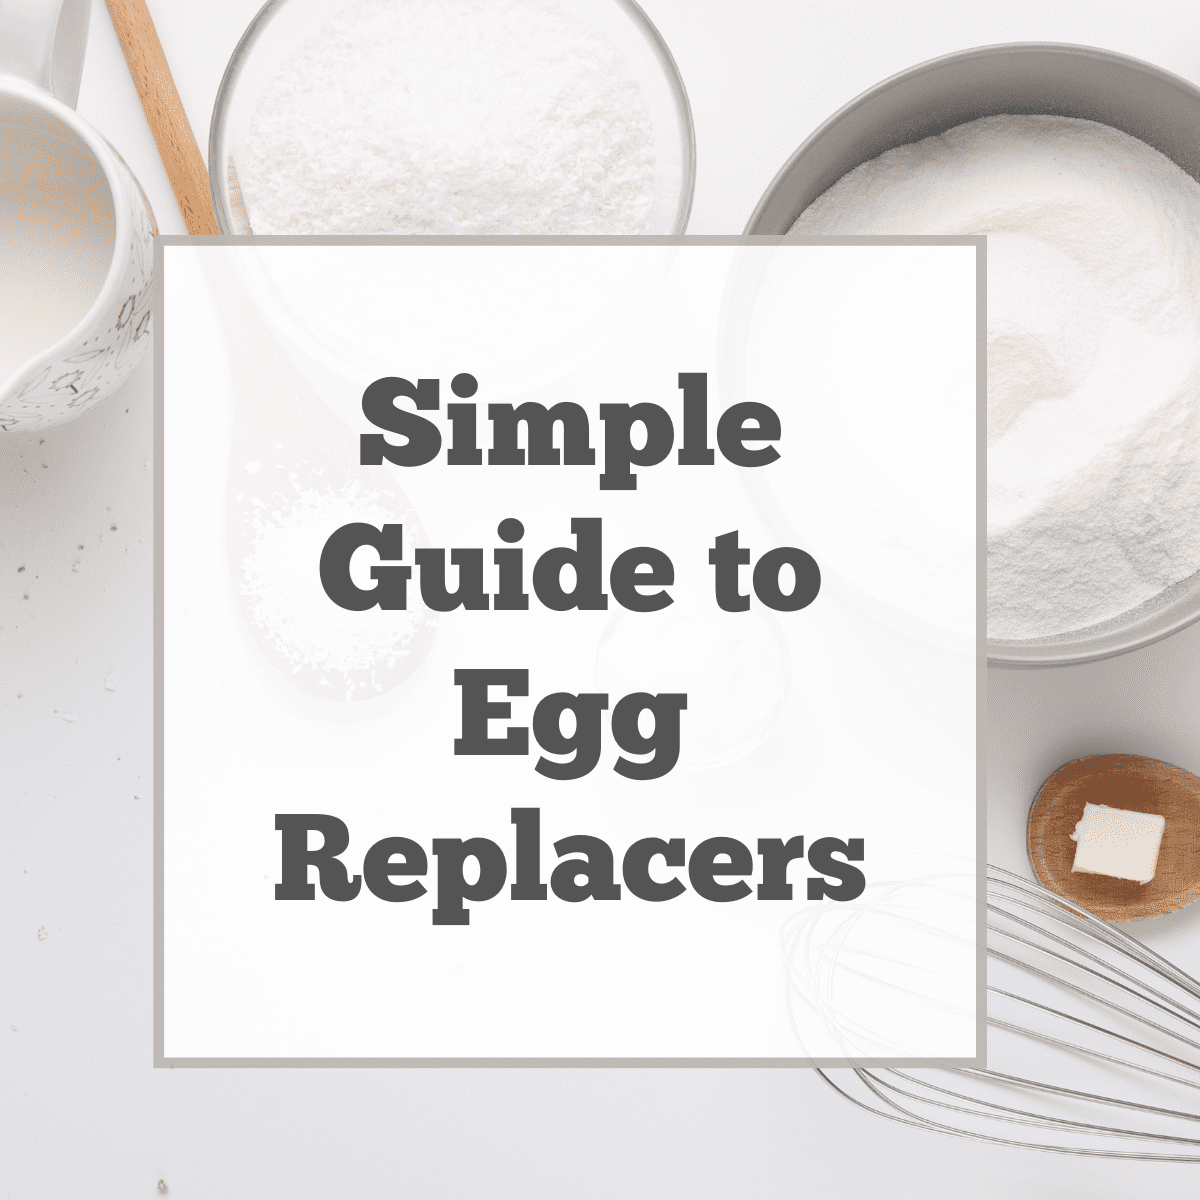 Vegan egg replacers.